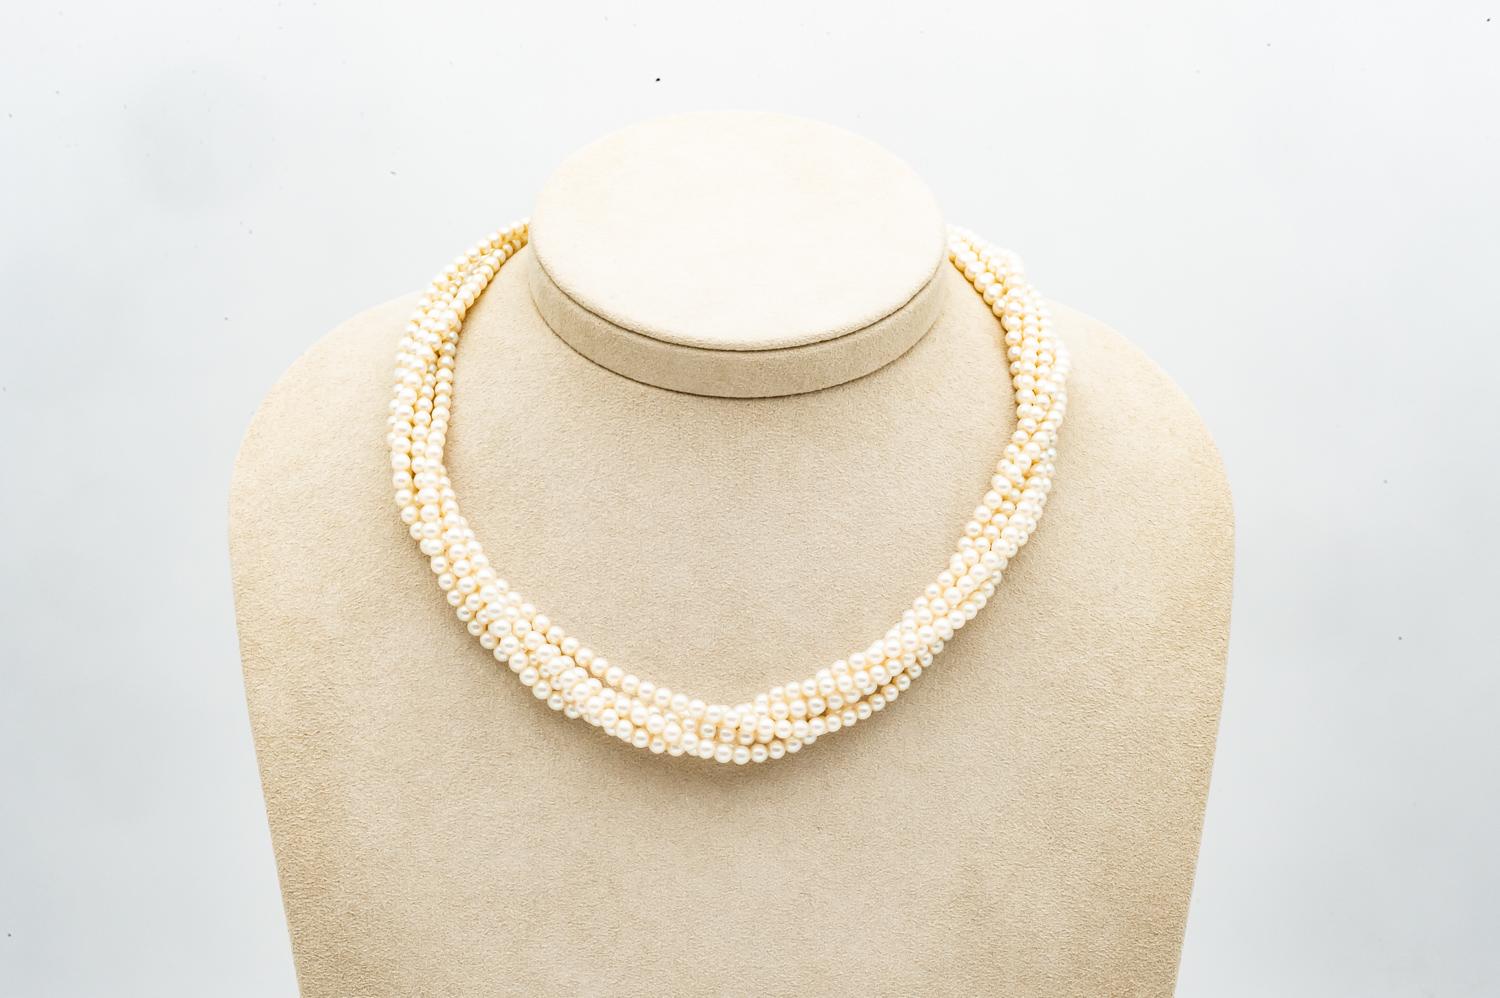 Découvrez cet élégant collier composé de 6 rangs de perles de culture torsadées, rehaussé d'un fermoir en or jaune et blanc 18k. Ce collier est une véritable œuvre d'art, alliant l'élégance classique des perles de culture à un design moderne et